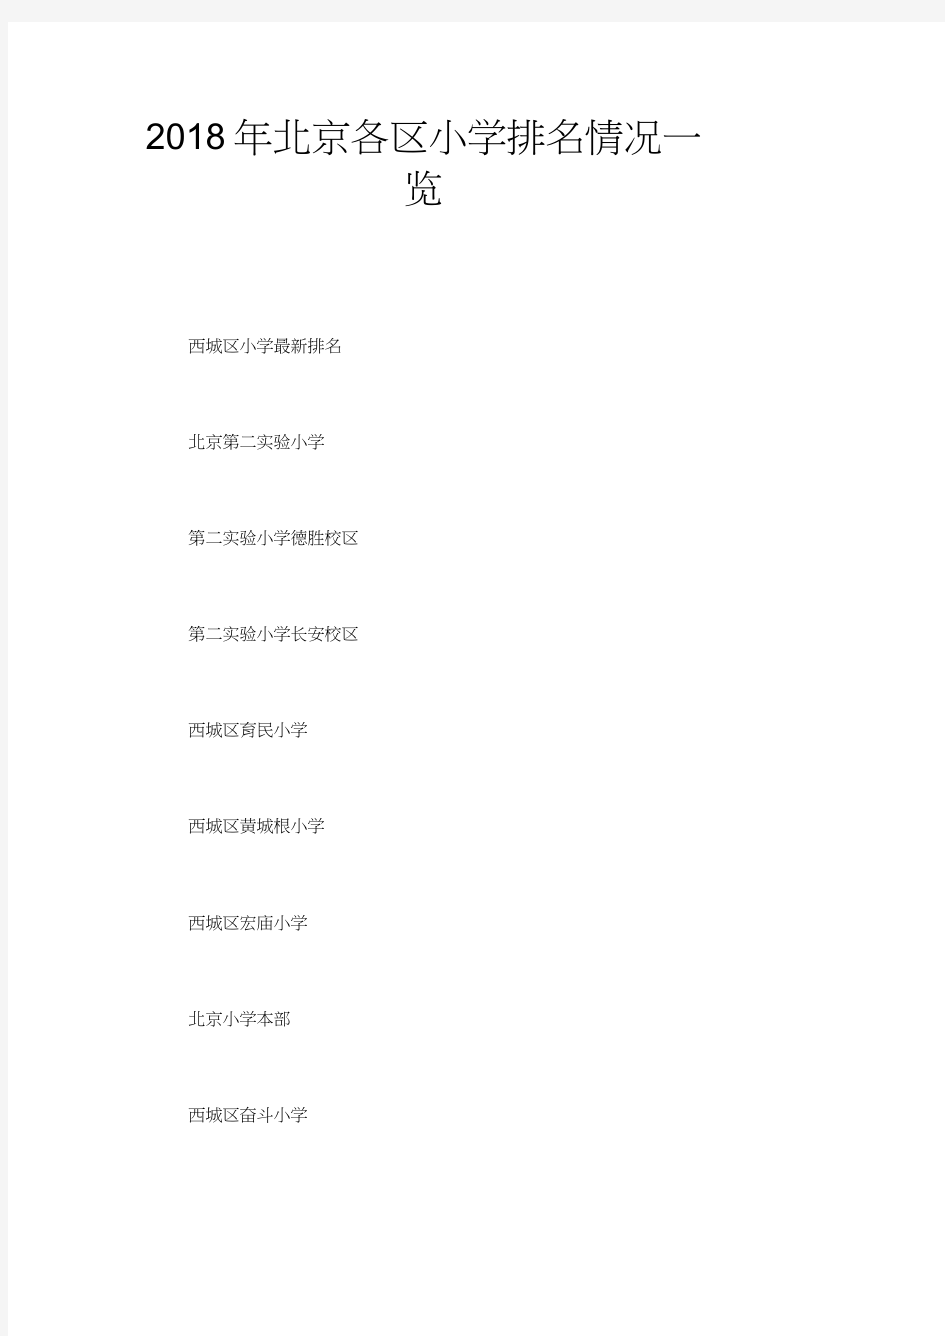 2018年北京各区小学排名情况一览